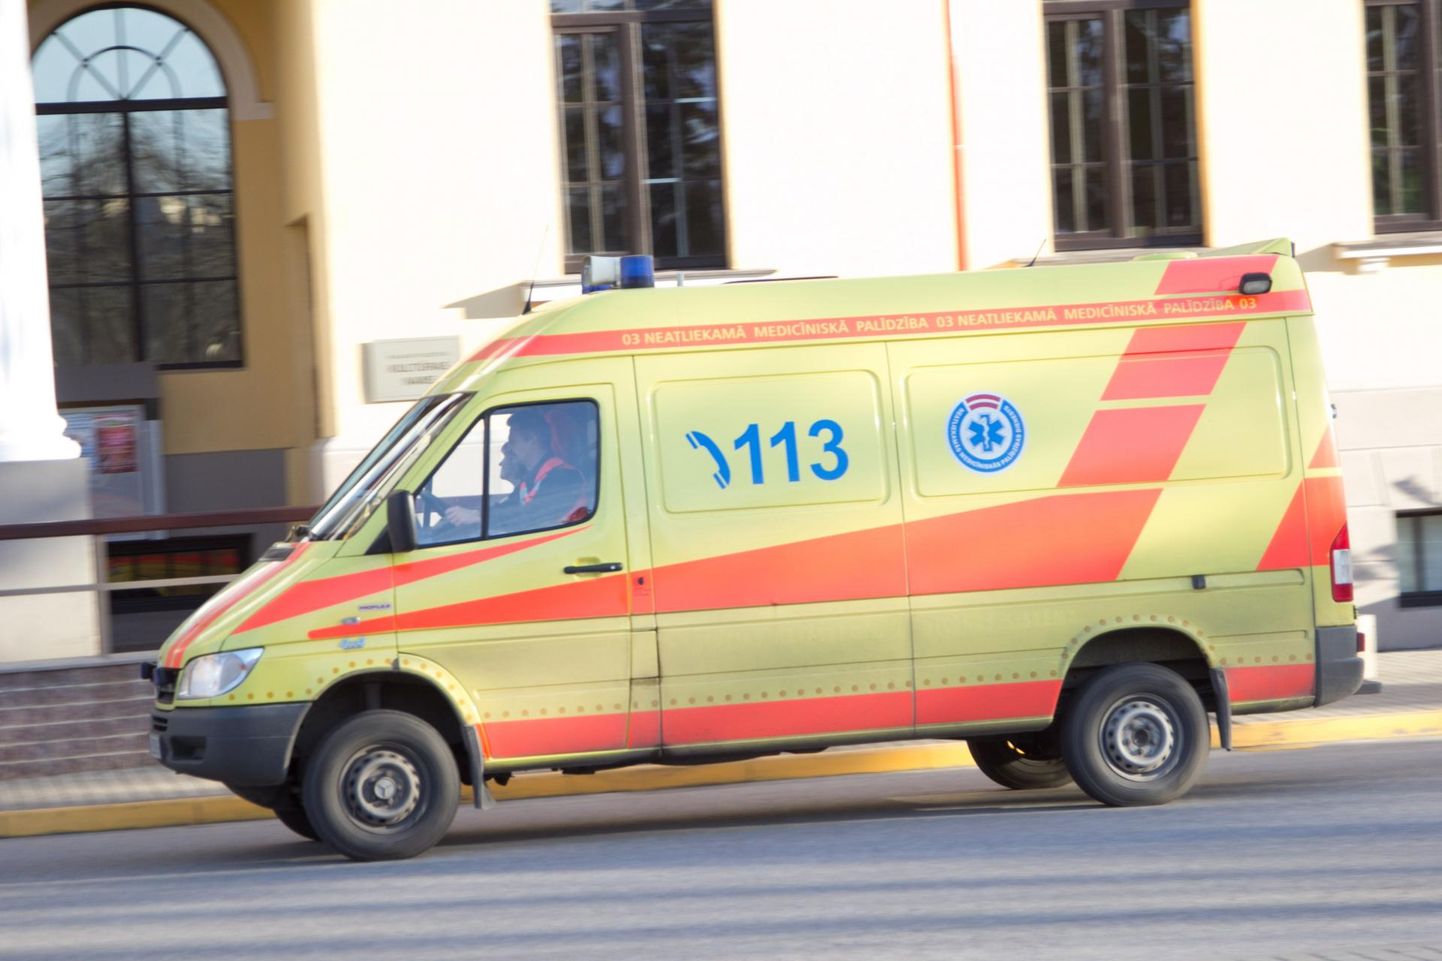 Läti kiirabi tööülesandeid täitmas. Foto on illustratiivne.